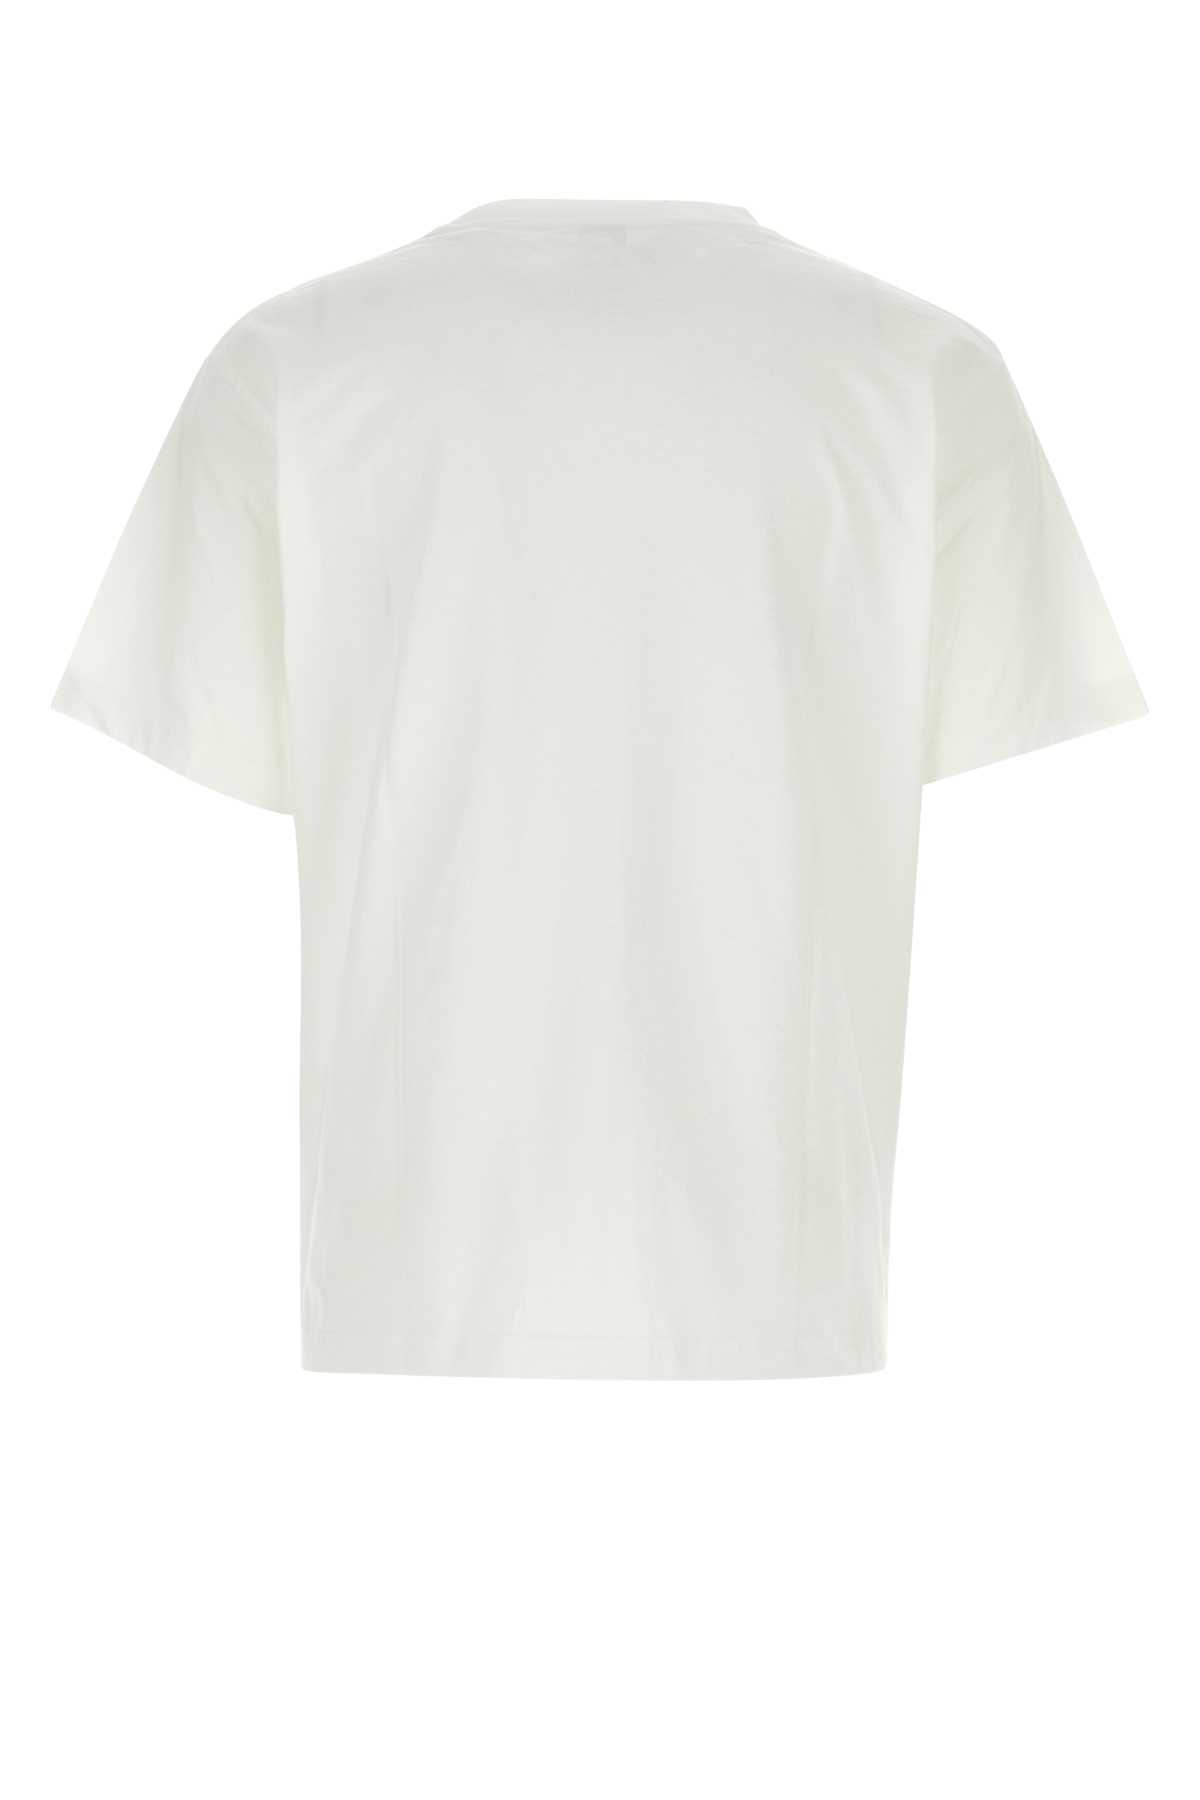 Kenzo White Cotton T-shirt In Offwhite